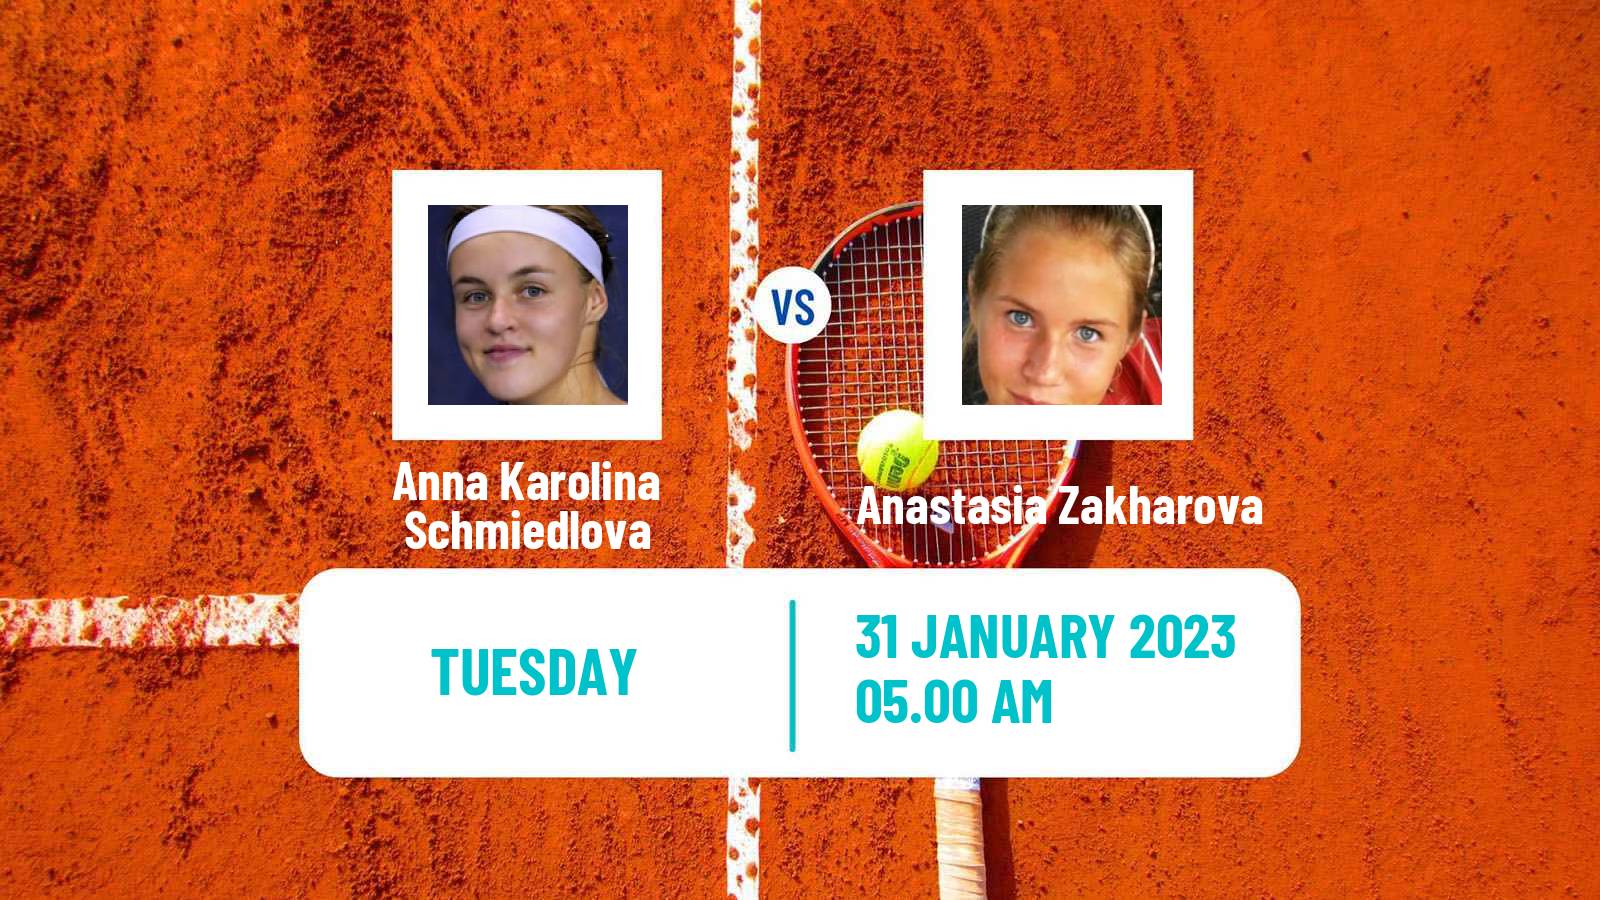 Tennis WTA Hua Hin Anna Karolina Schmiedlova - Anastasia Zakharova